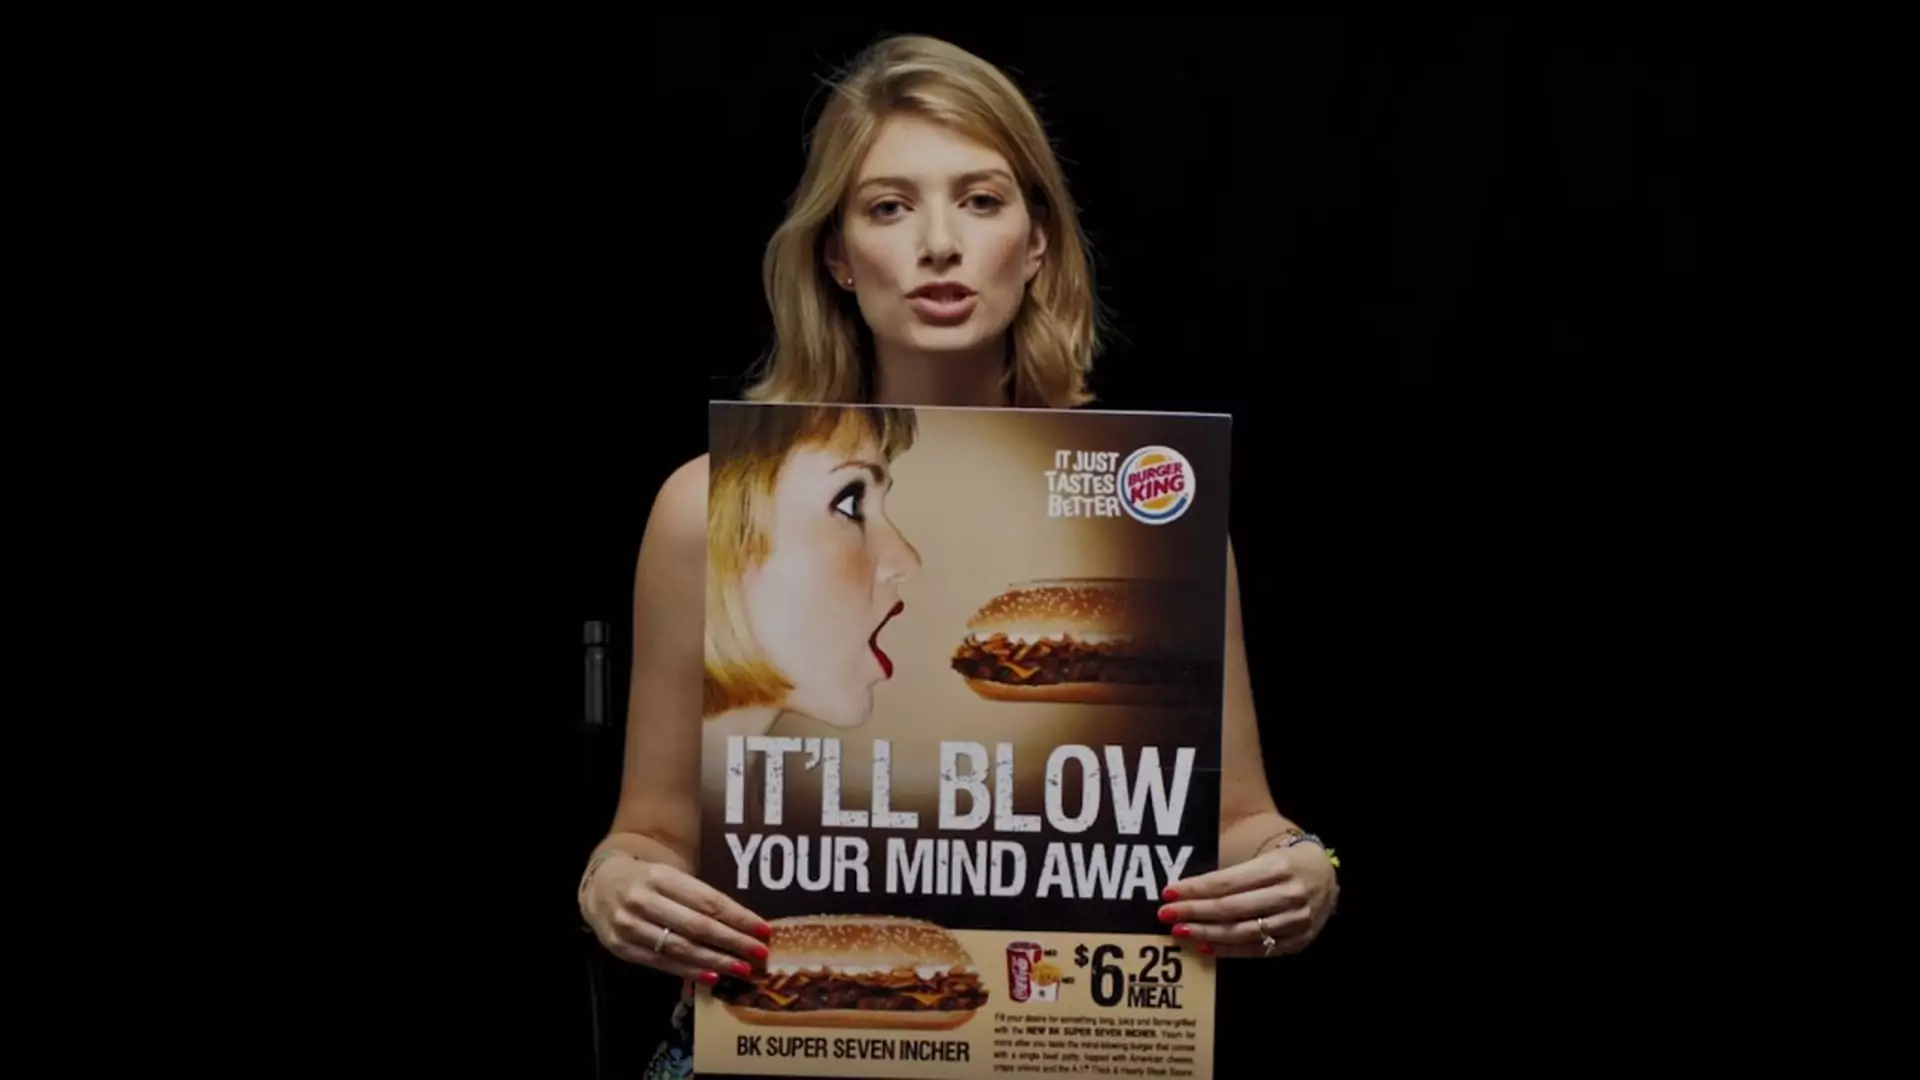 "Uwielbiam obciągać kanapki" - kobiety mówią dość traktowaniu ich jak przedmioty reklamowe! [wideo]